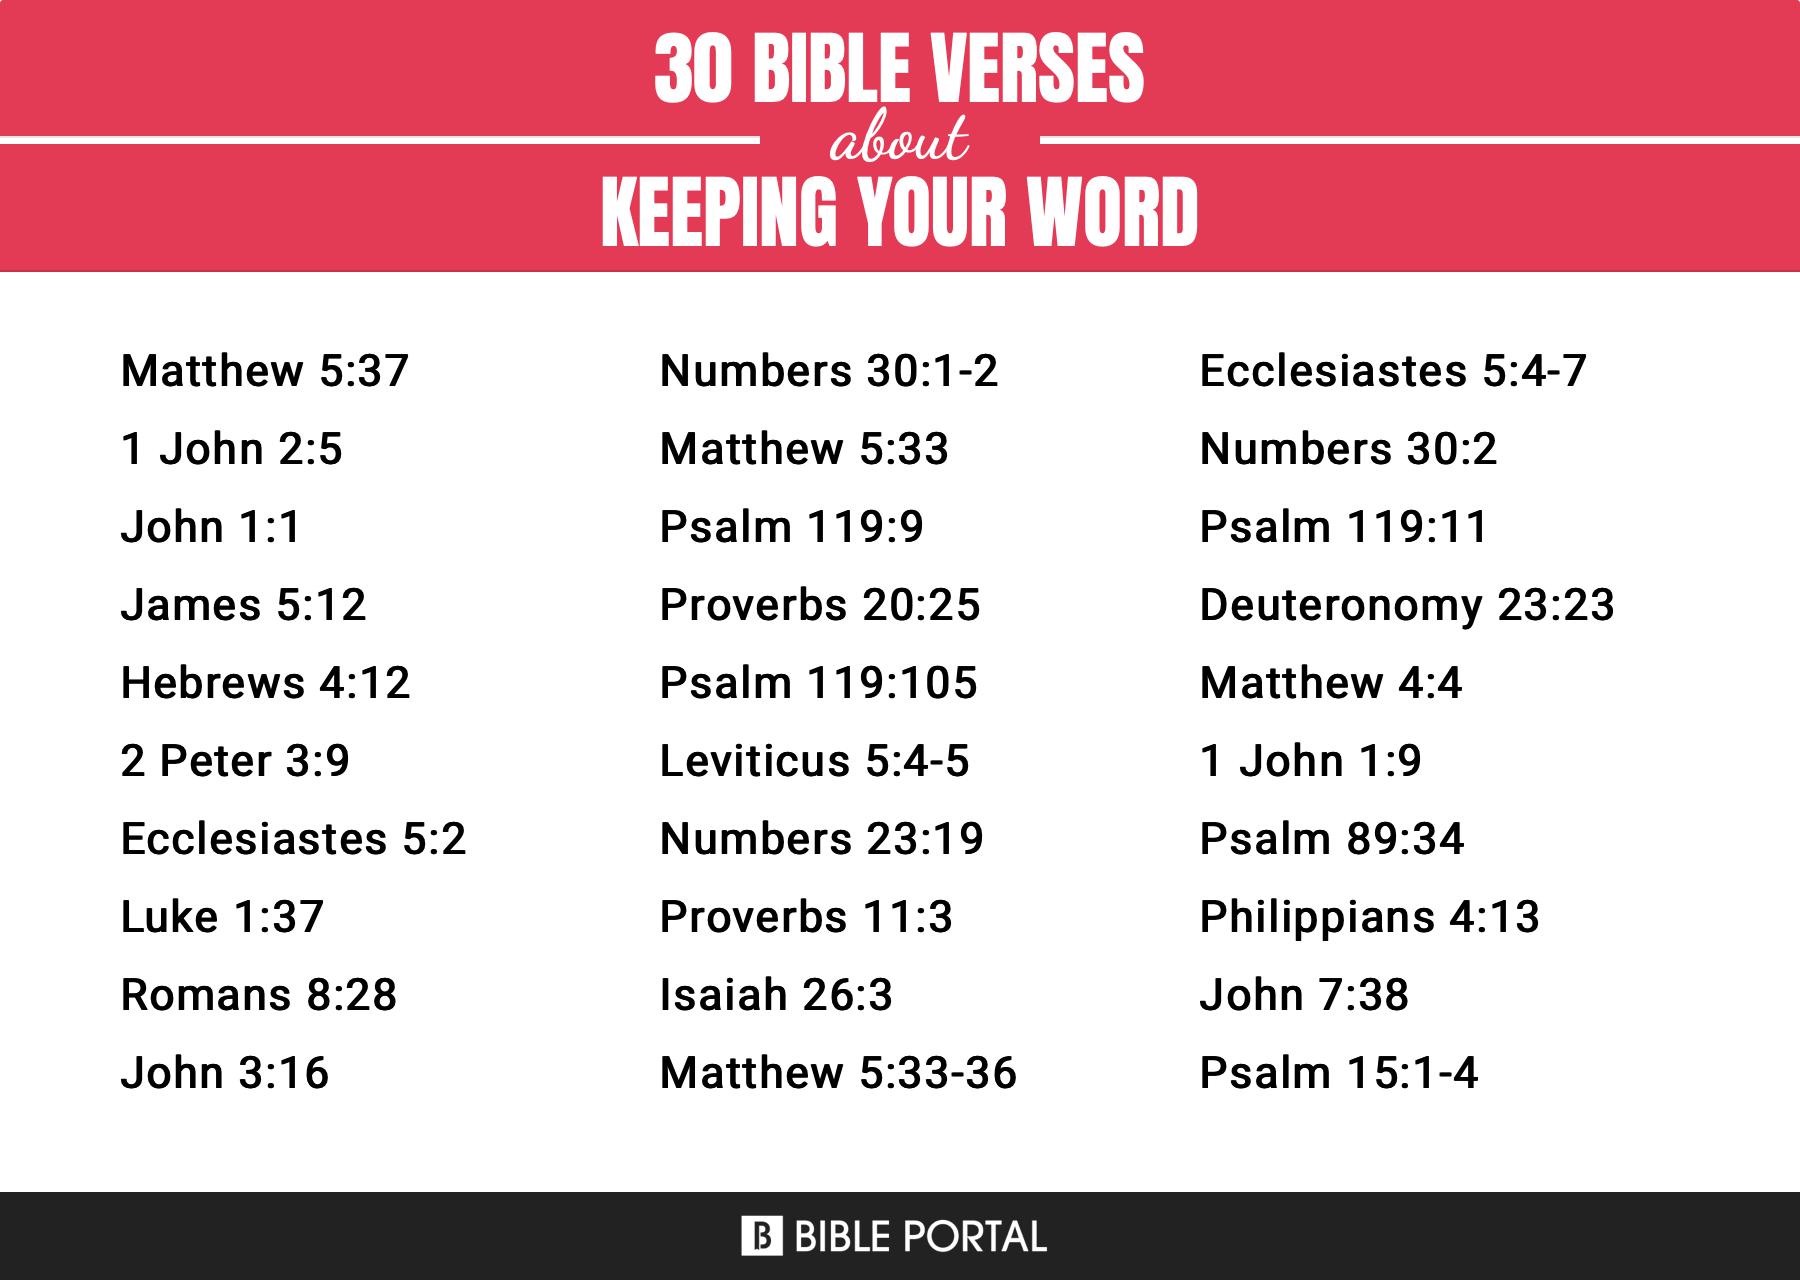 15 importantes versículos bíblicos sobre el cumplimiento de la palabra dada